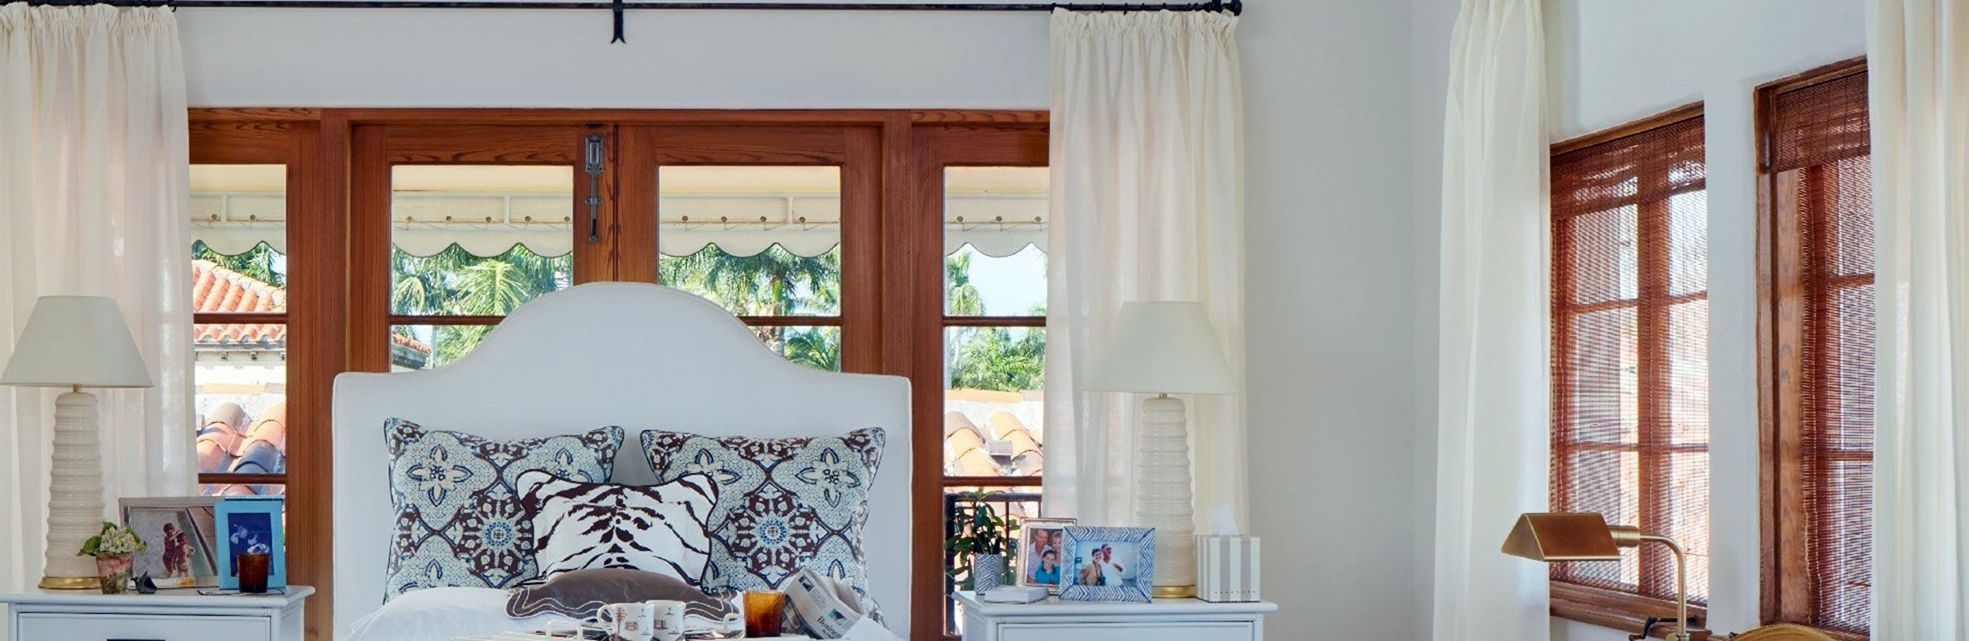 Coastal Bedroom Design With Wide Windows And Door Openings